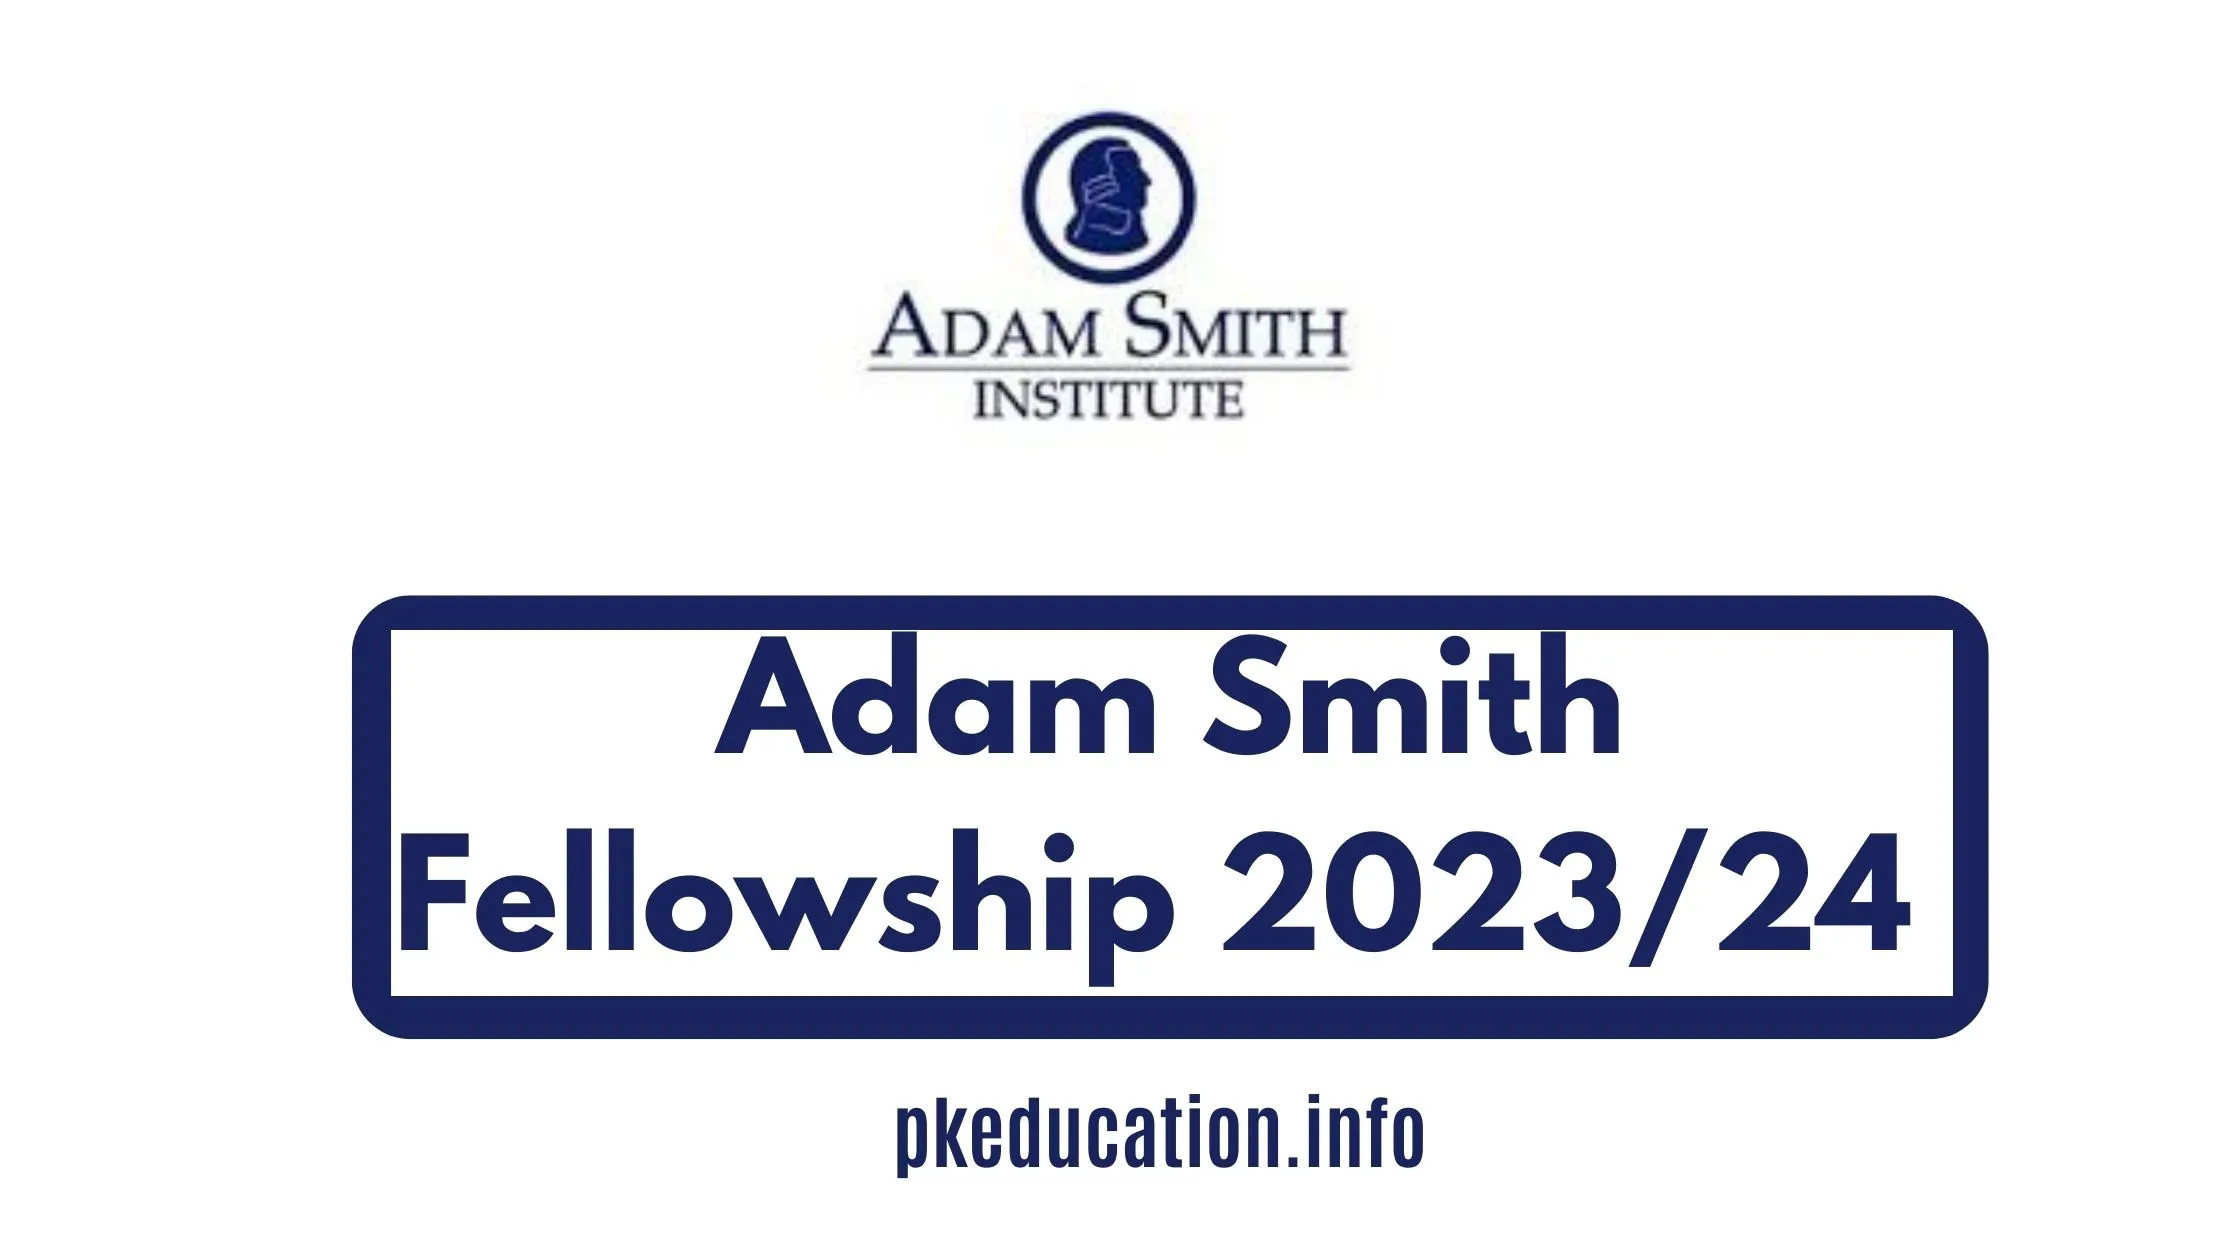 Adam Smith Fellowship 2023/24